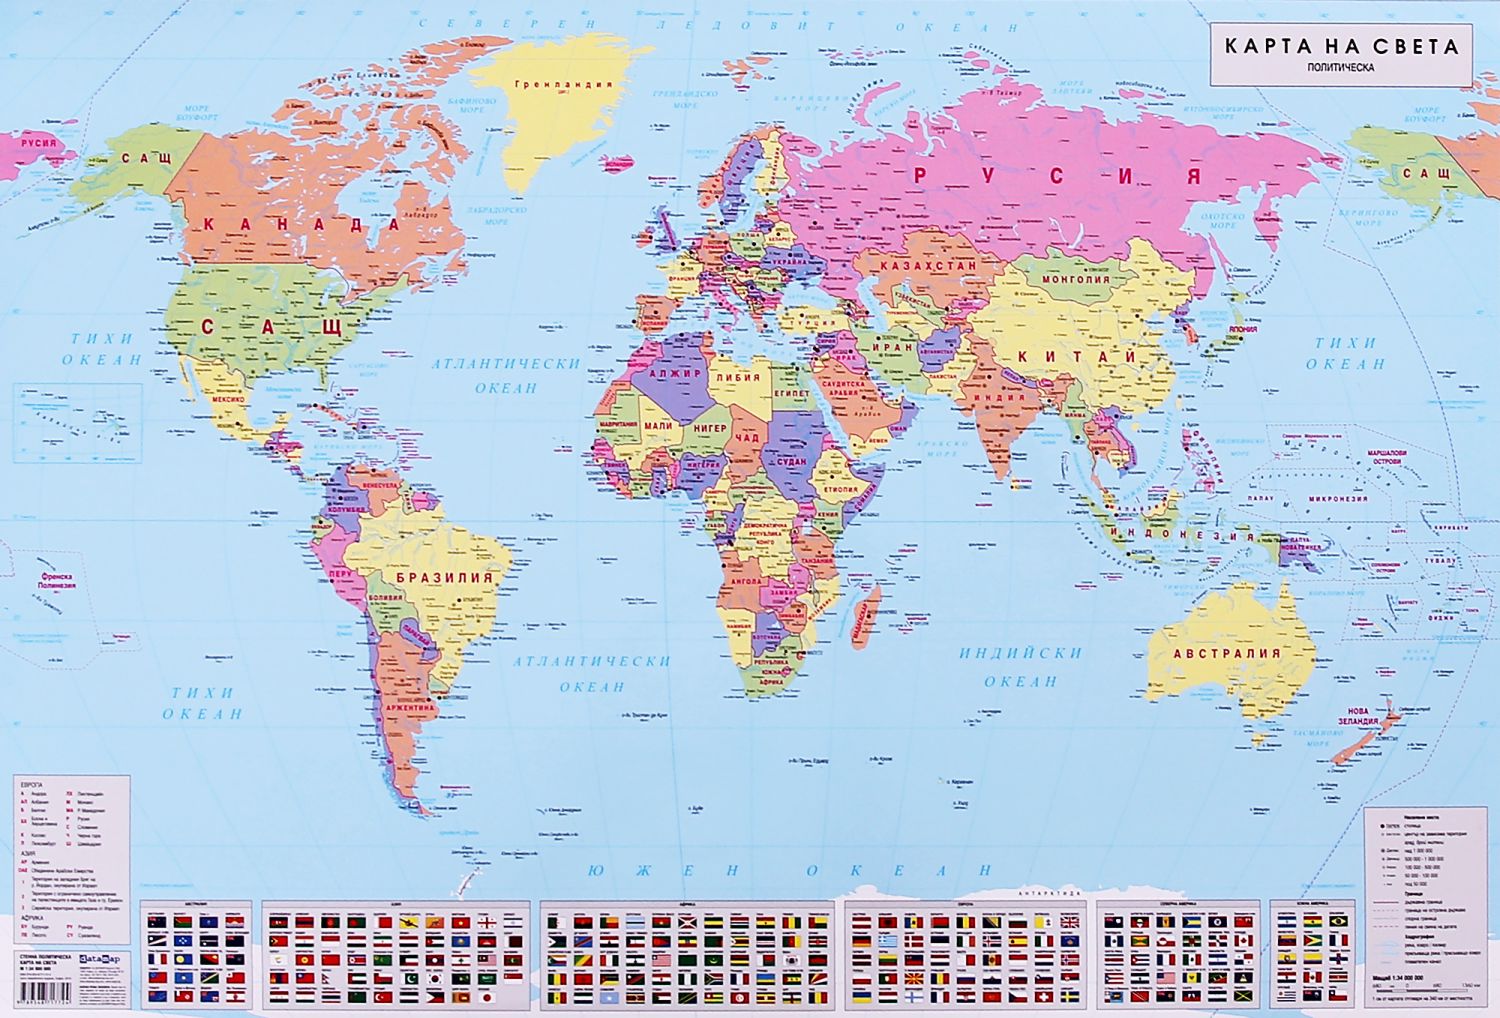 съвременна политическа карта на света store.bg   Стенна политическа карта на света   М 1:34 000 000 съвременна политическа карта на света